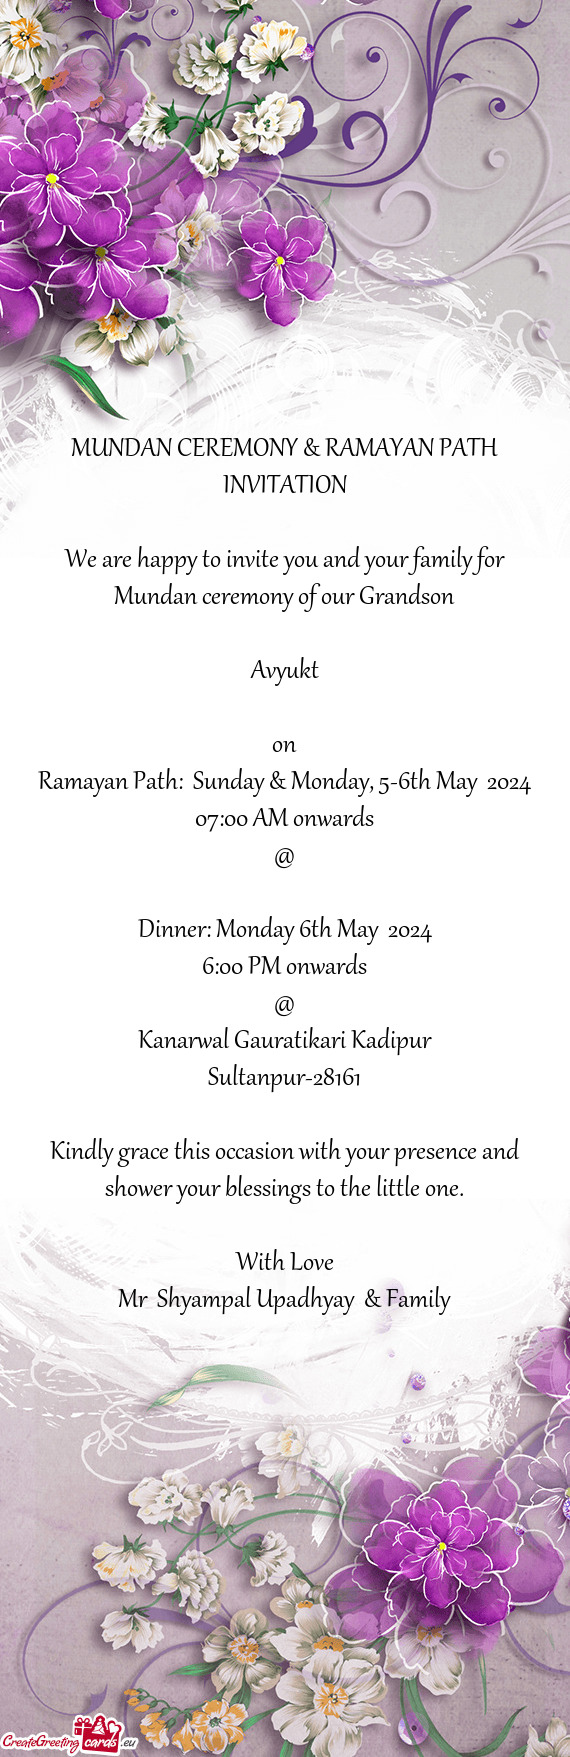 Ramayan Path: Sunday & Monday, 5-6th May 2024